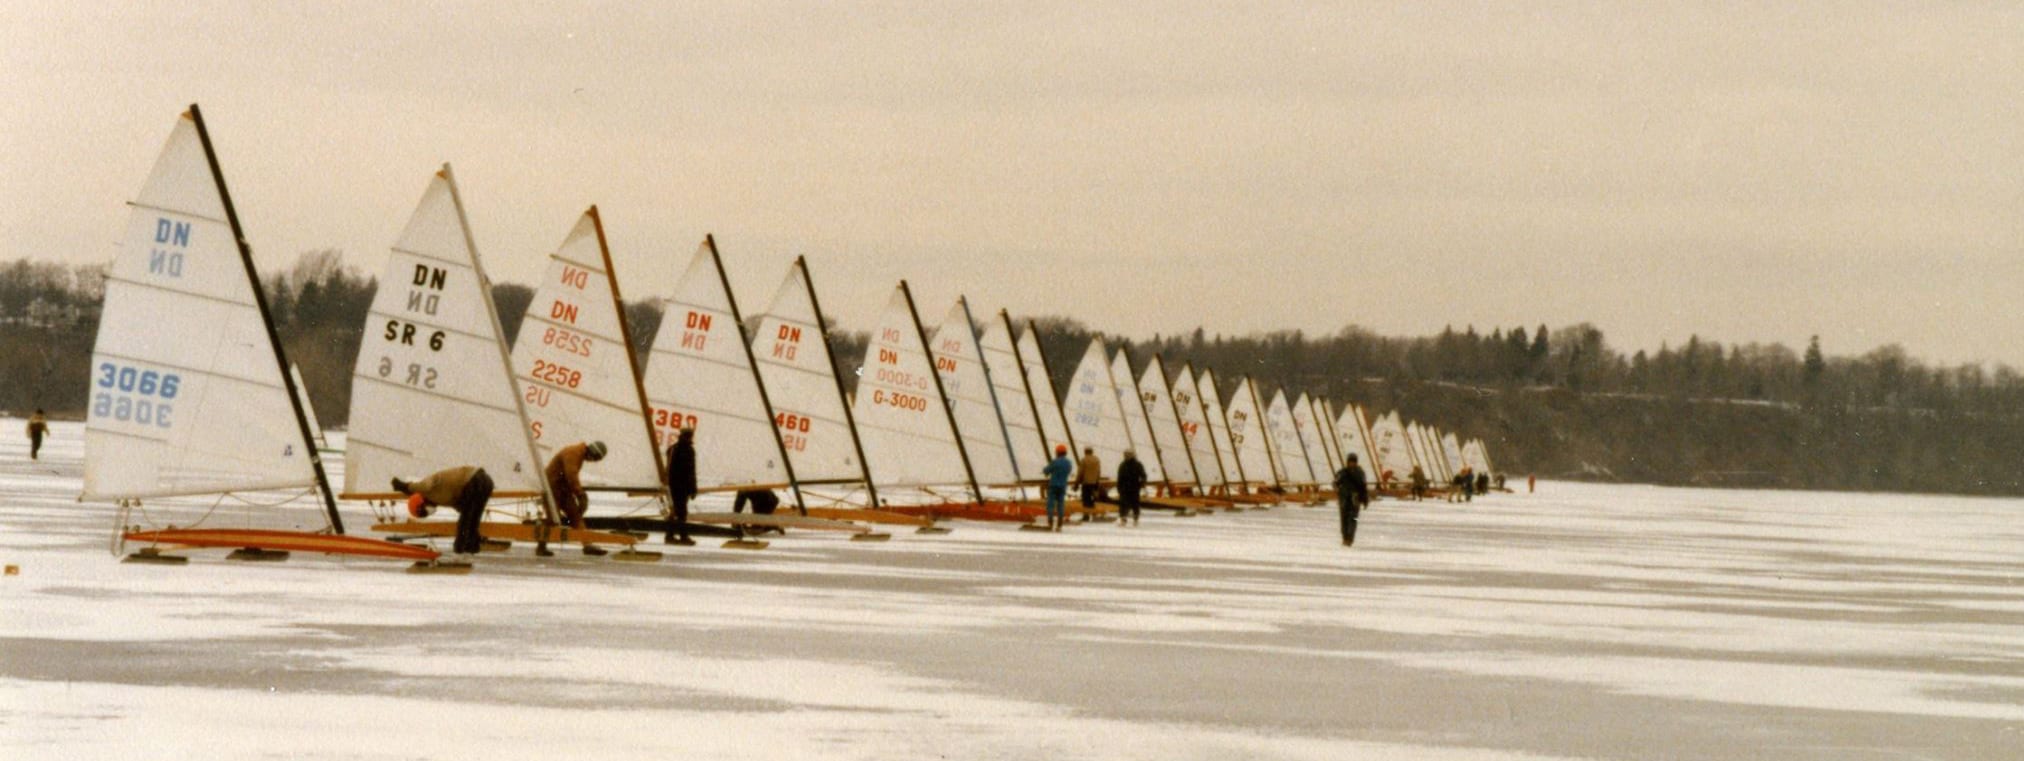 1969 Dn Iceboats1 (1)